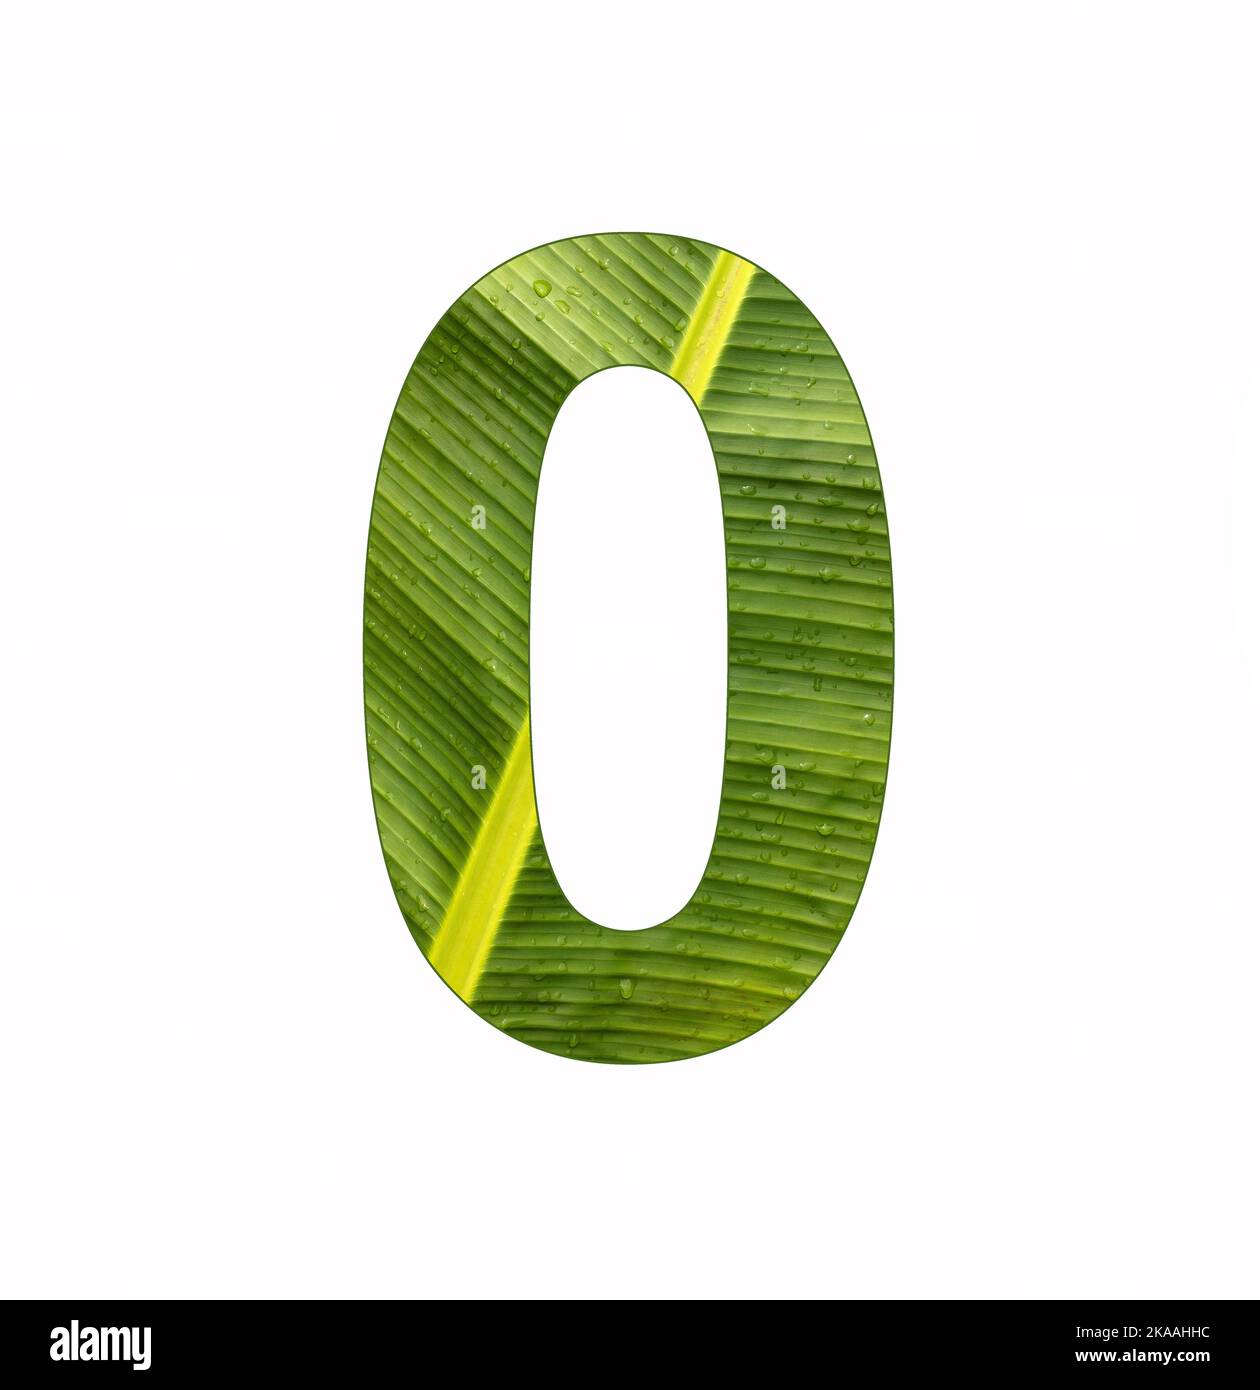 Number 0 - Digit zero on banana plant leaf background Stock Photo